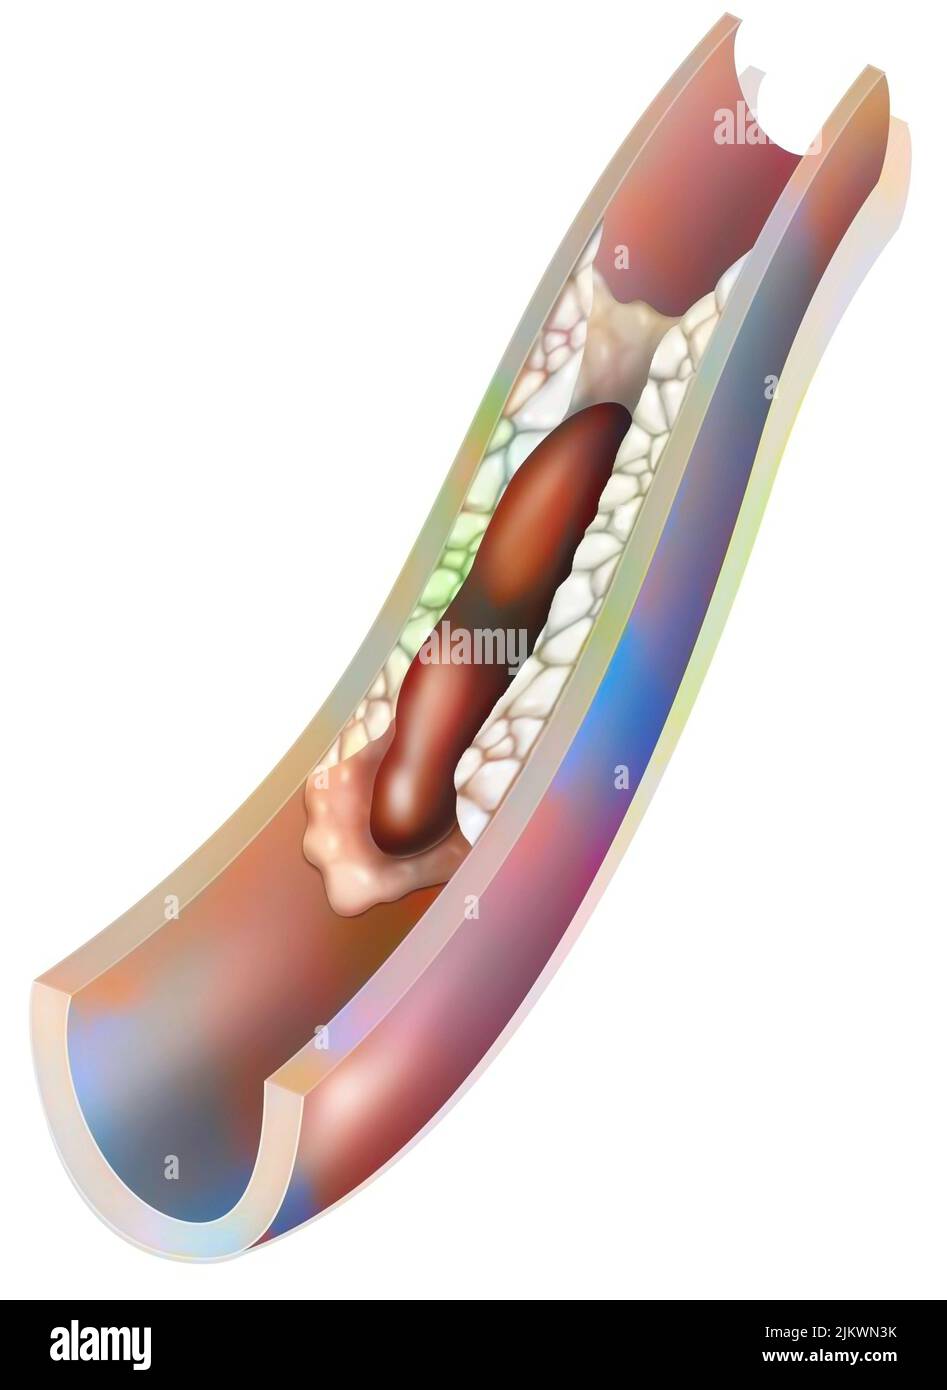 Arteria con placca ateromatosa e un trombo (coagulo di sangue). Foto Stock